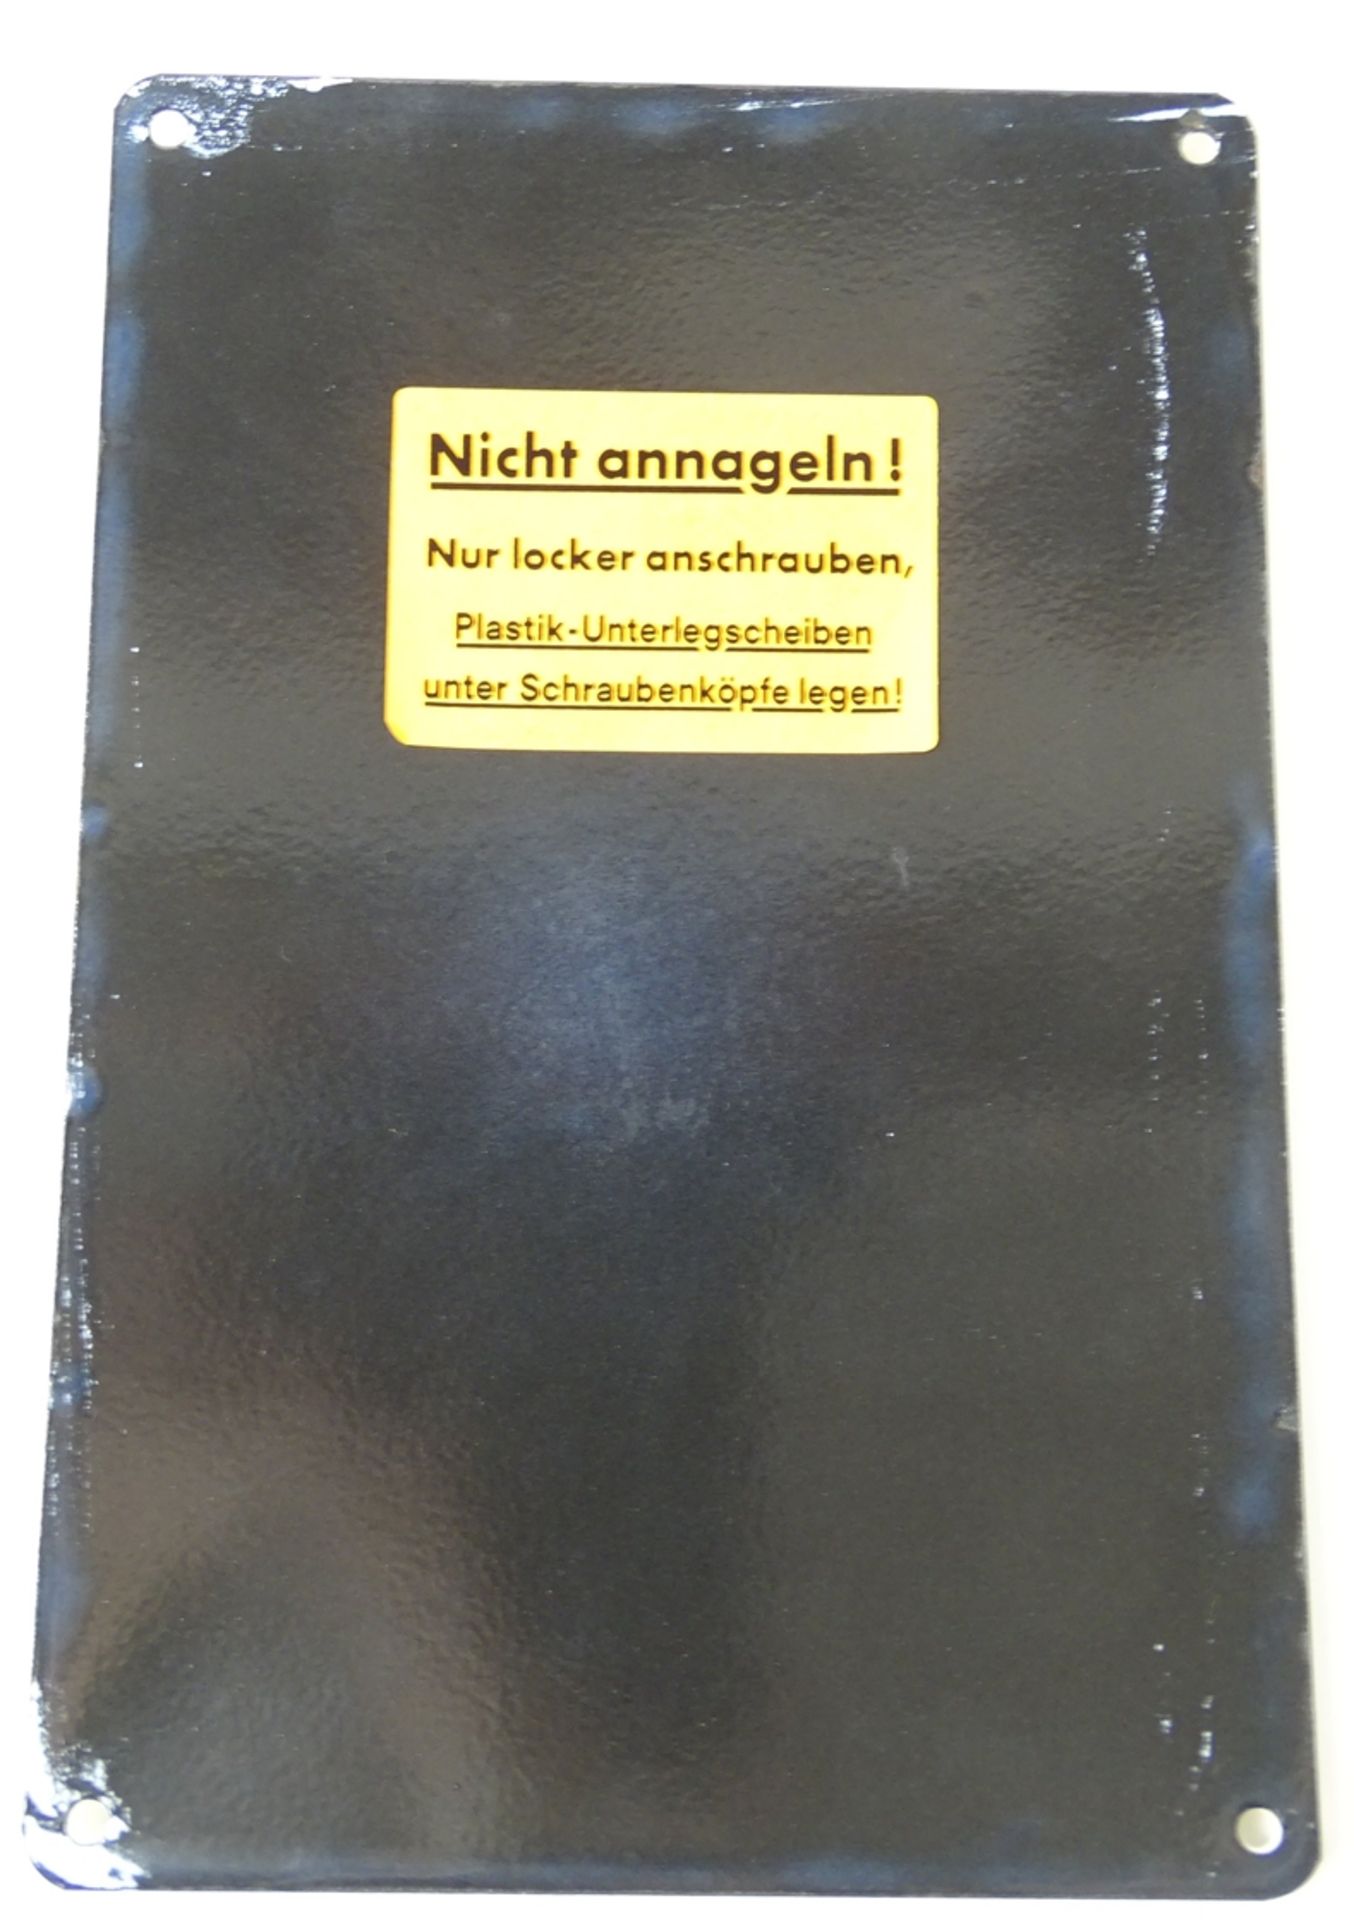 Emailleschild "Provinzial Feuer Societät", 16 x 23,5 cm, leichte Altersspuren - Image 2 of 2